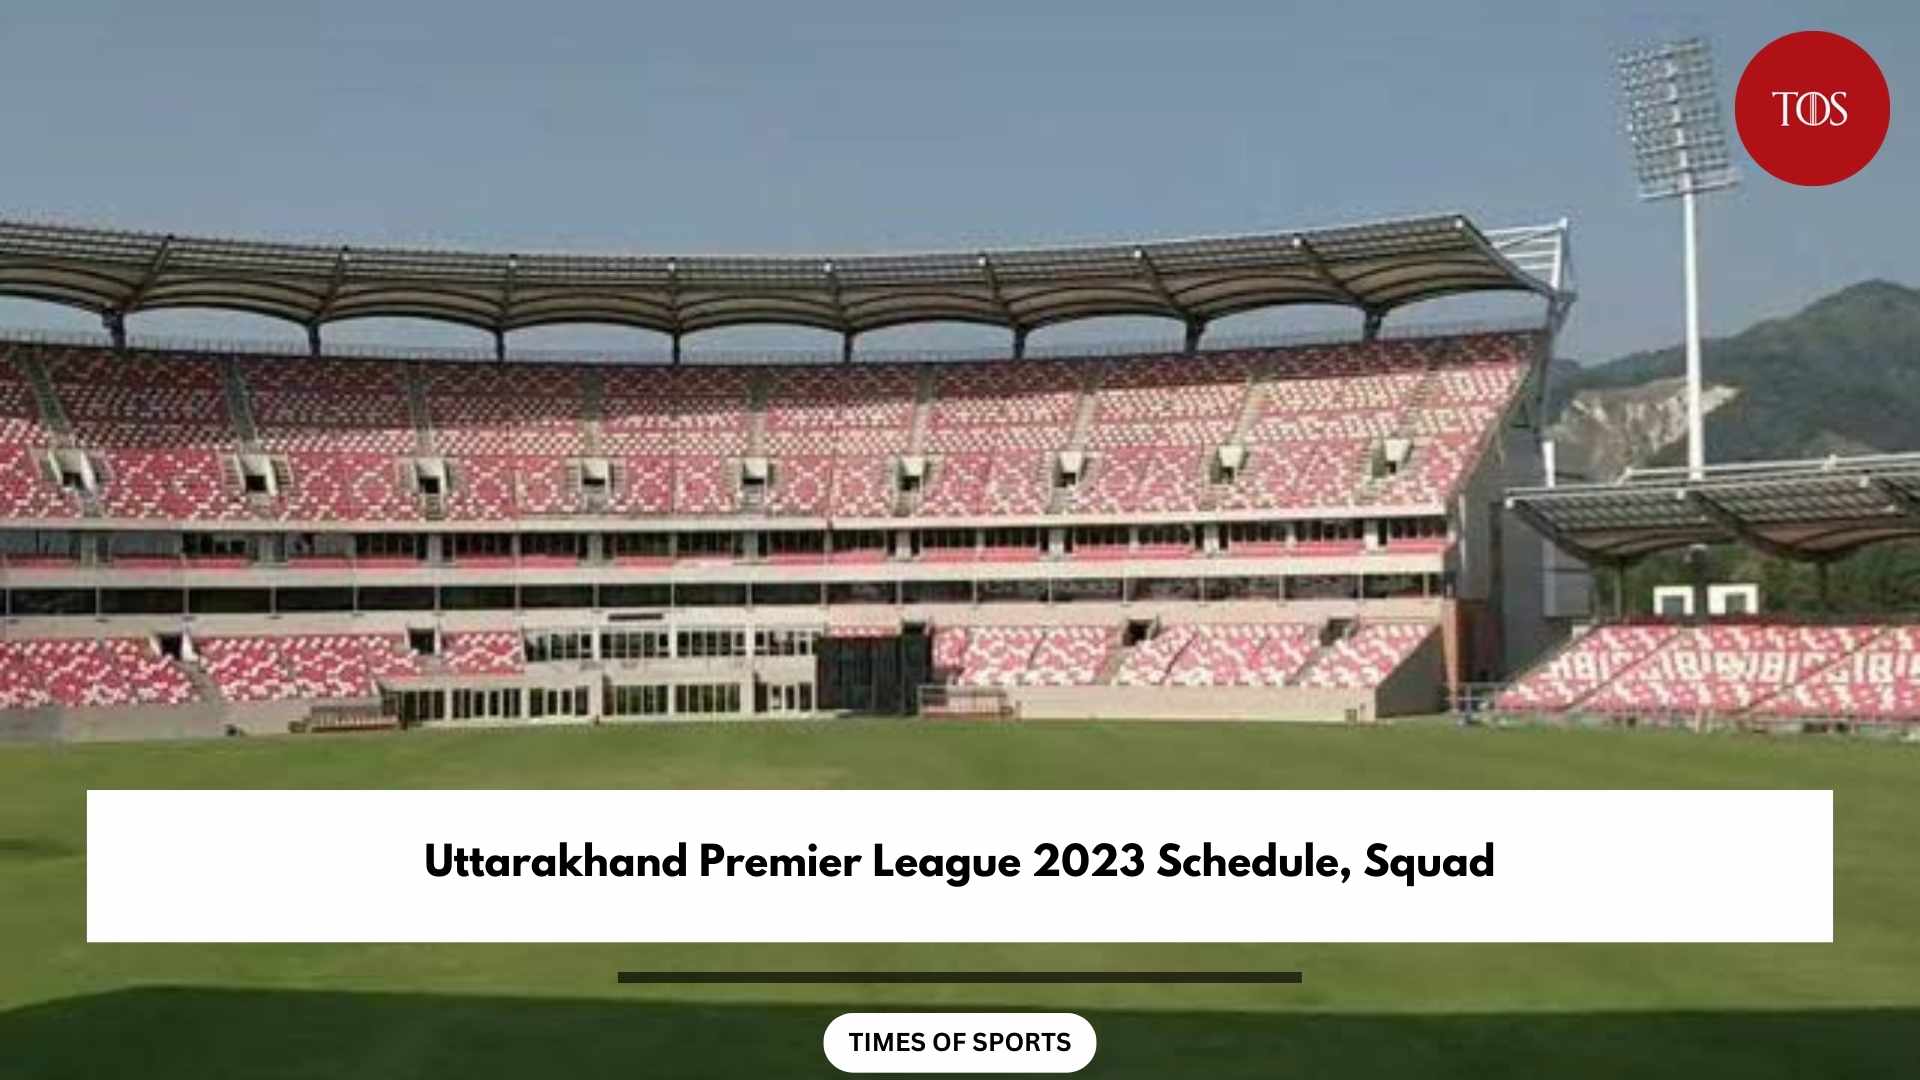 Uttarakhand Premier League 2023 Schedule, Squad